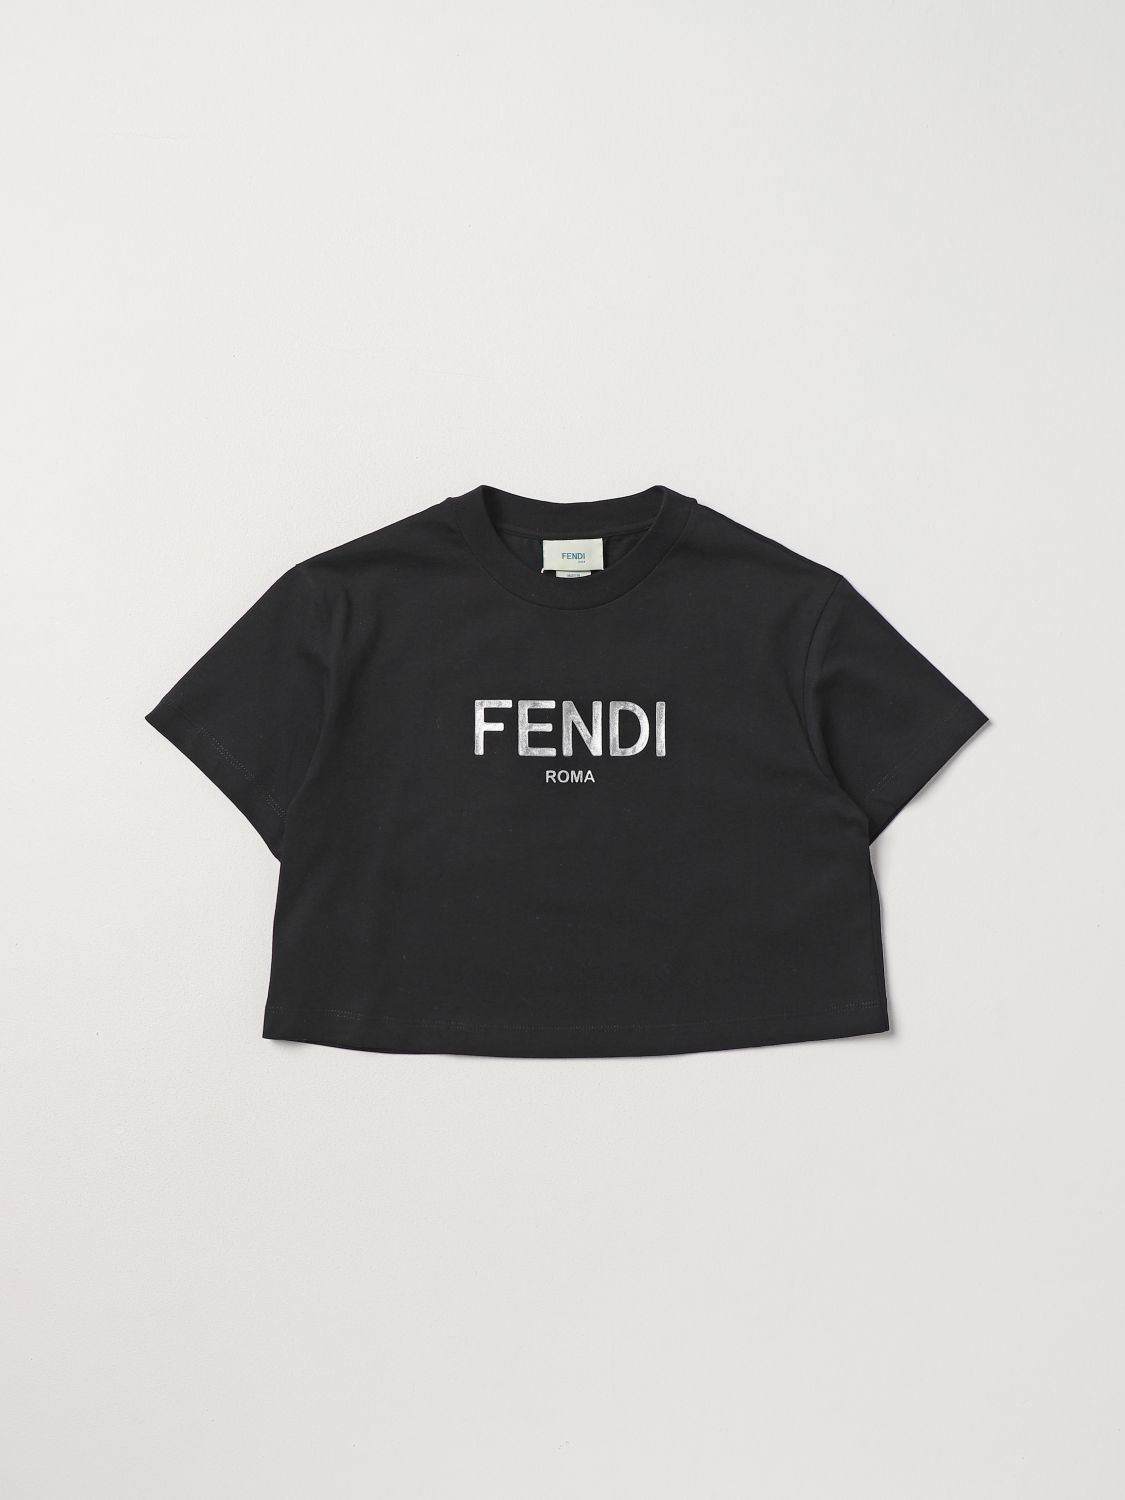 Fendi T-shirt  Kids Kids Color Black